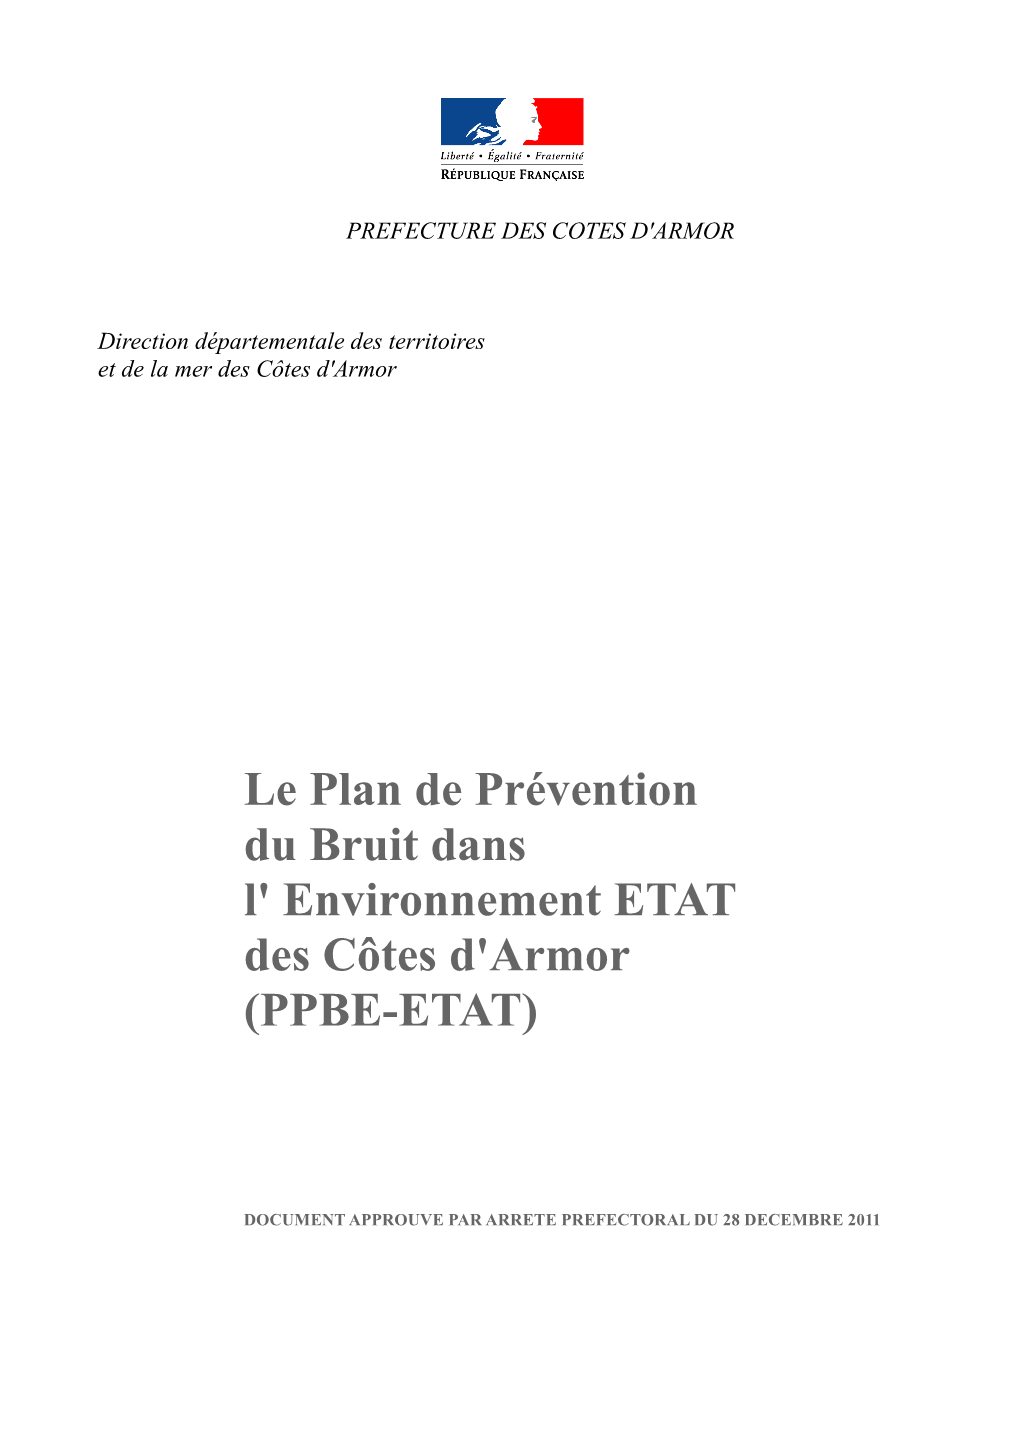 PPBE-Etat 22 Approuve 28 Dec 2011